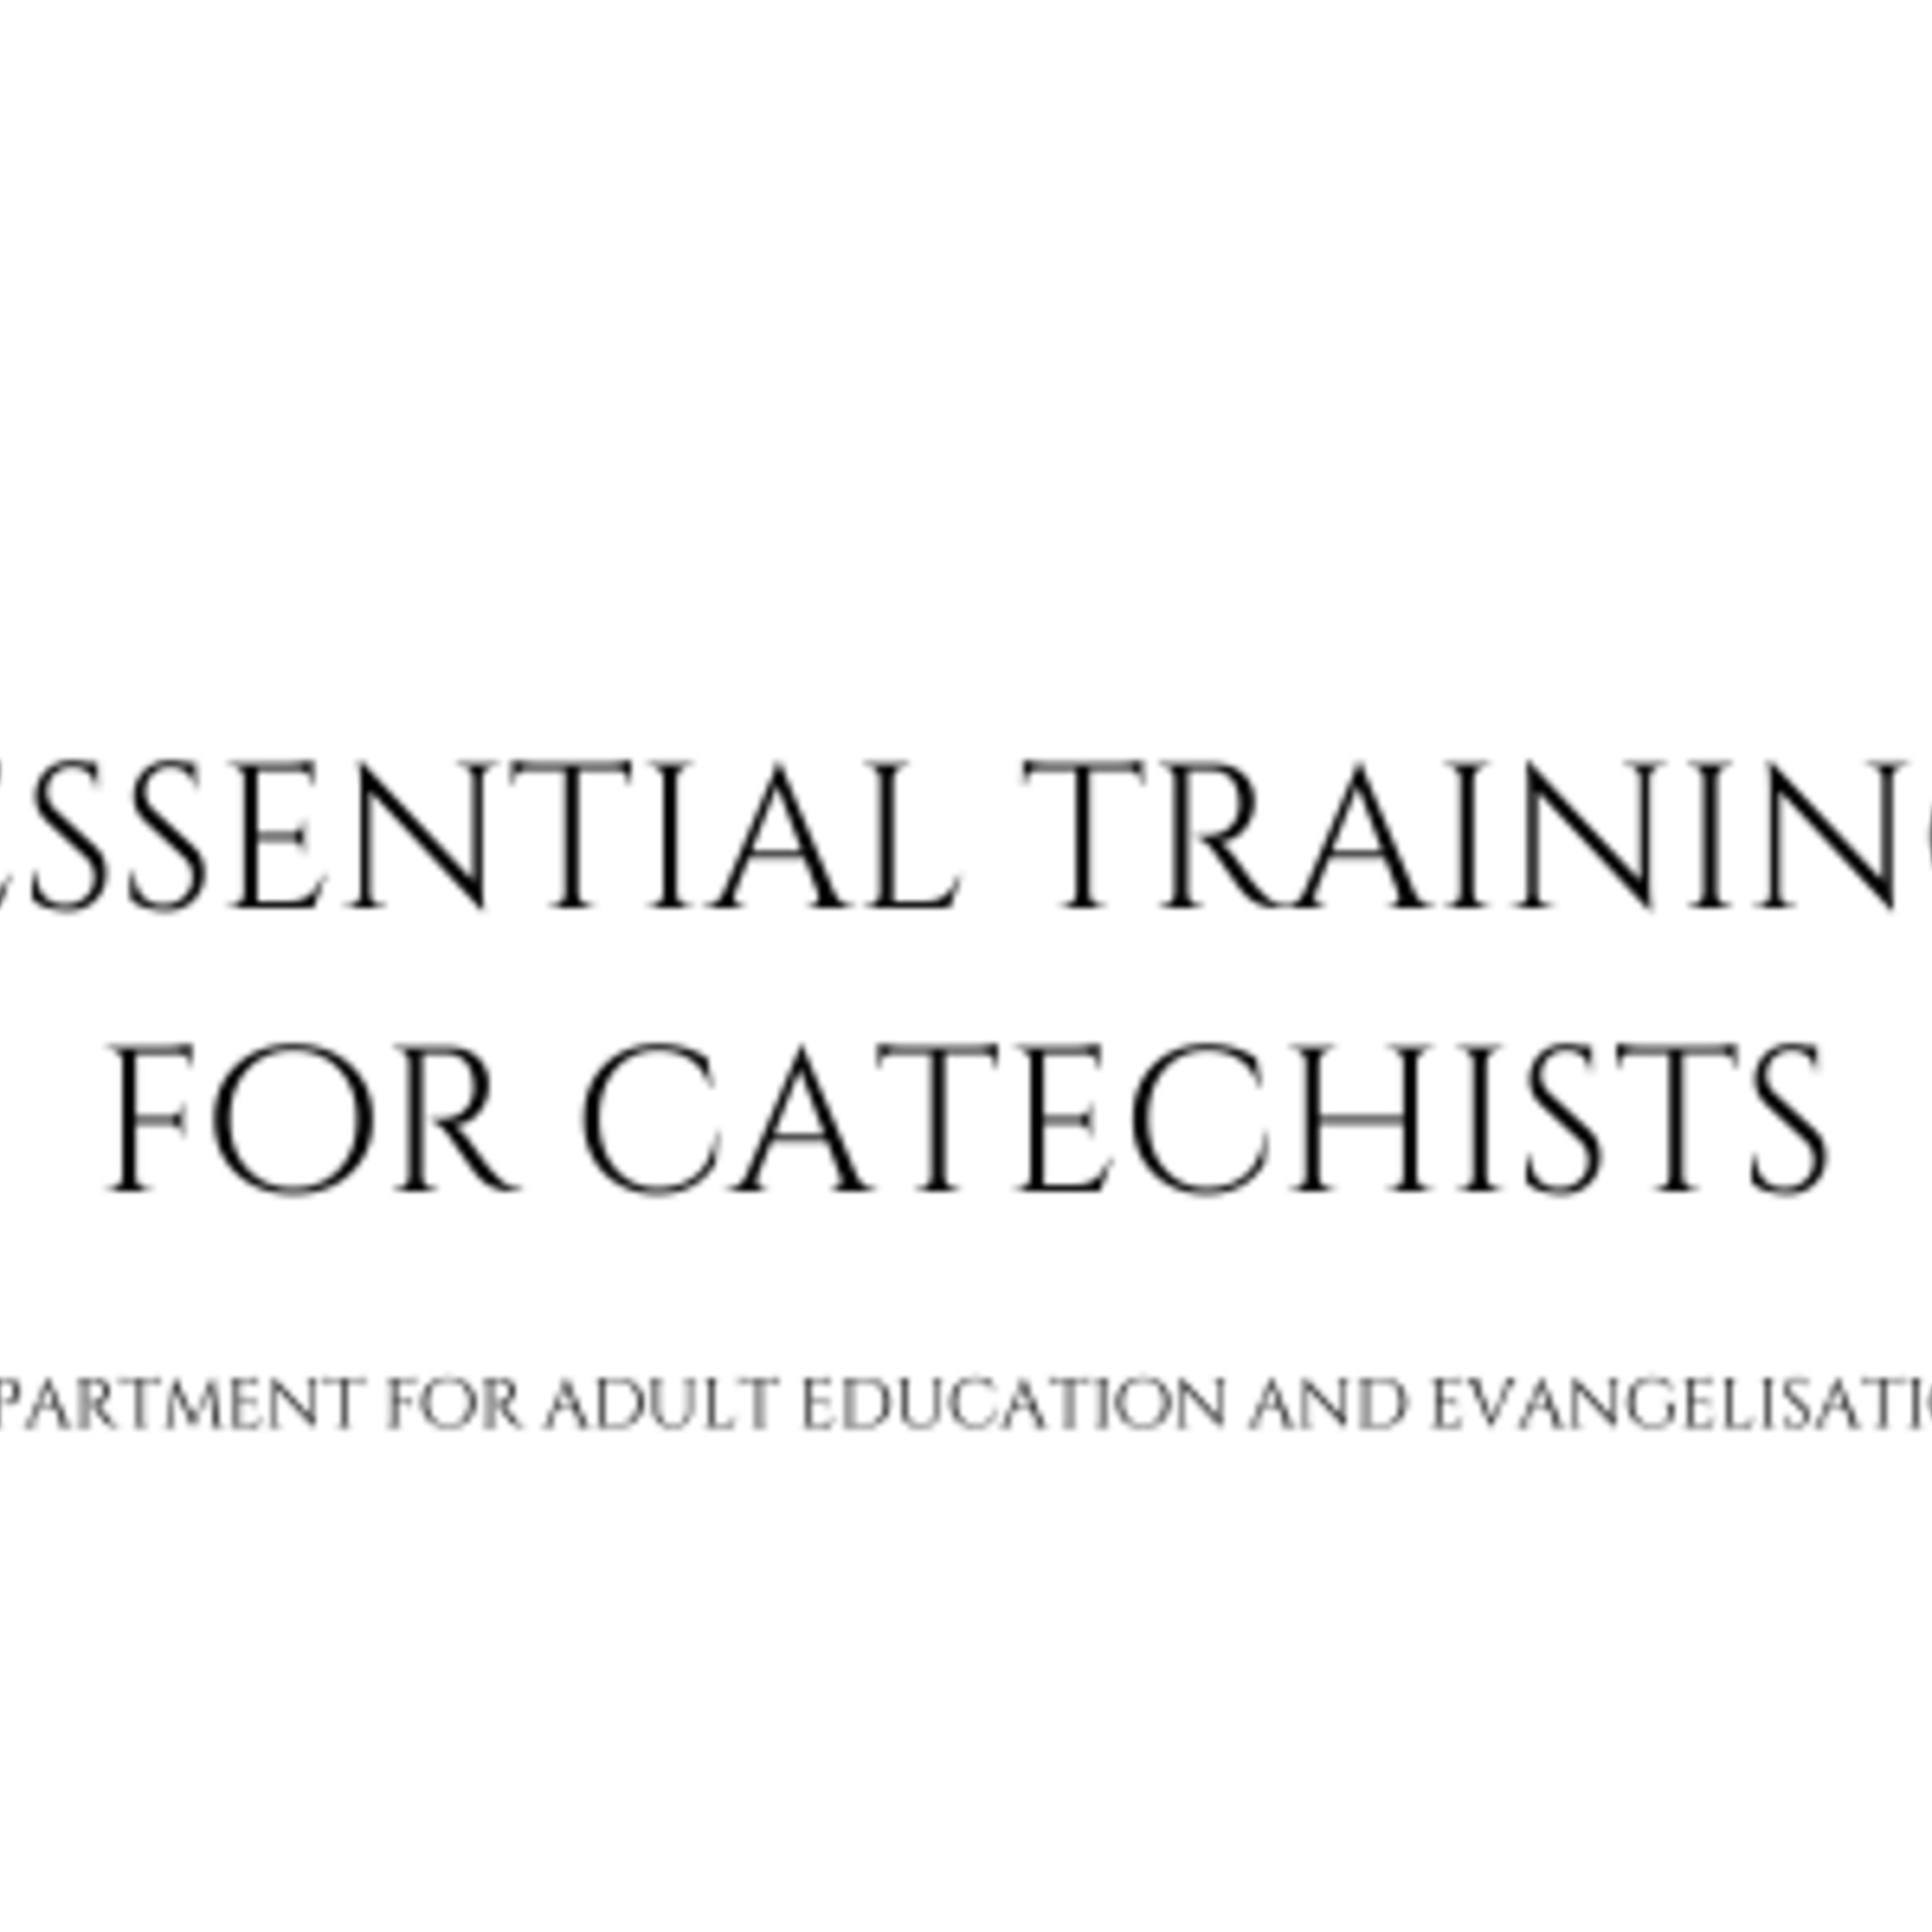 Catechist Training